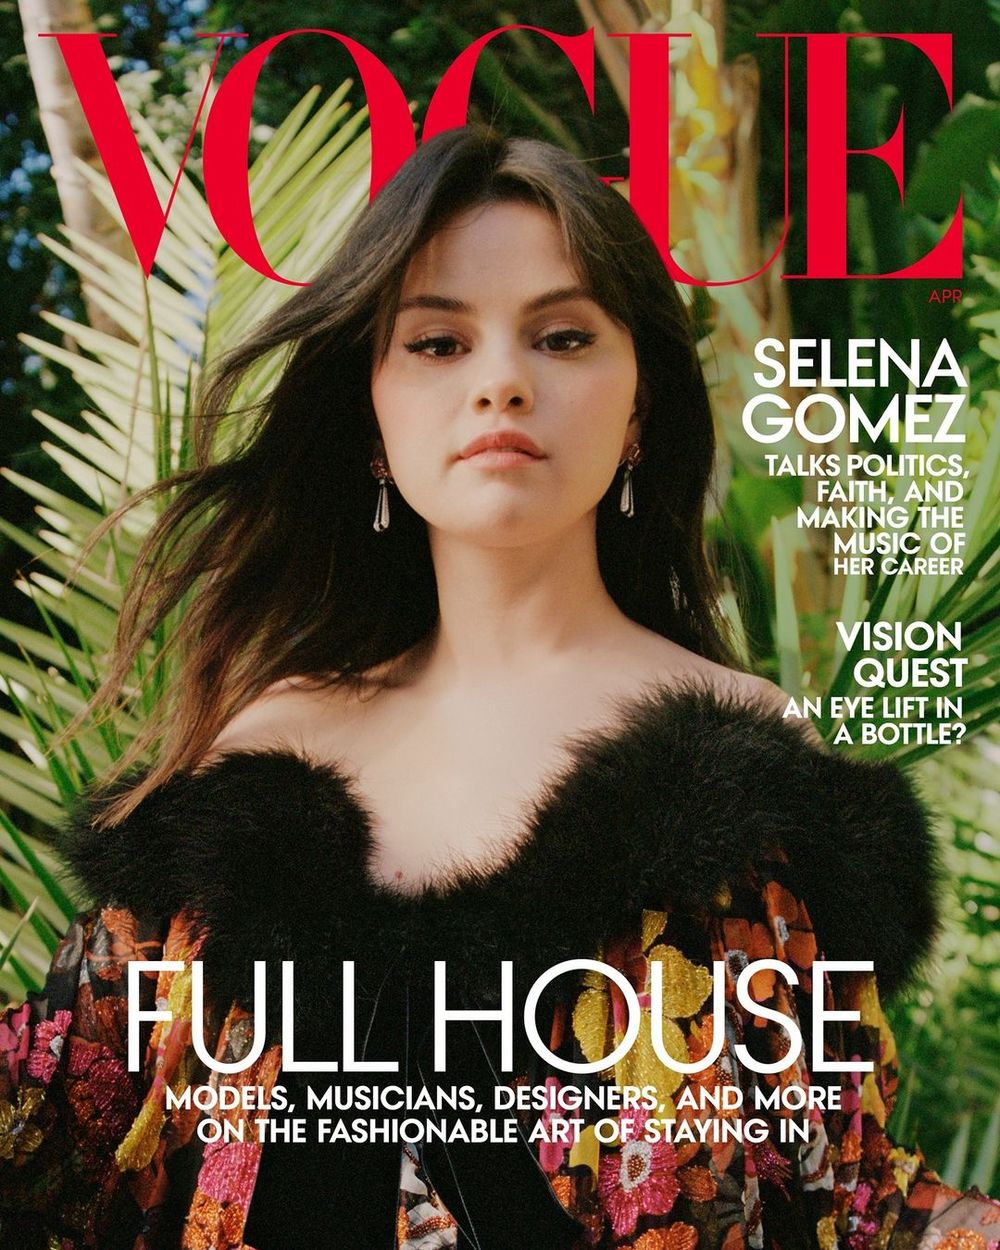  
Nhan sắc Selena Gomez tuy đẹp nhưng cách diện trang phục lại khiến dân tình chê bai. (Ảnh: Instagram)